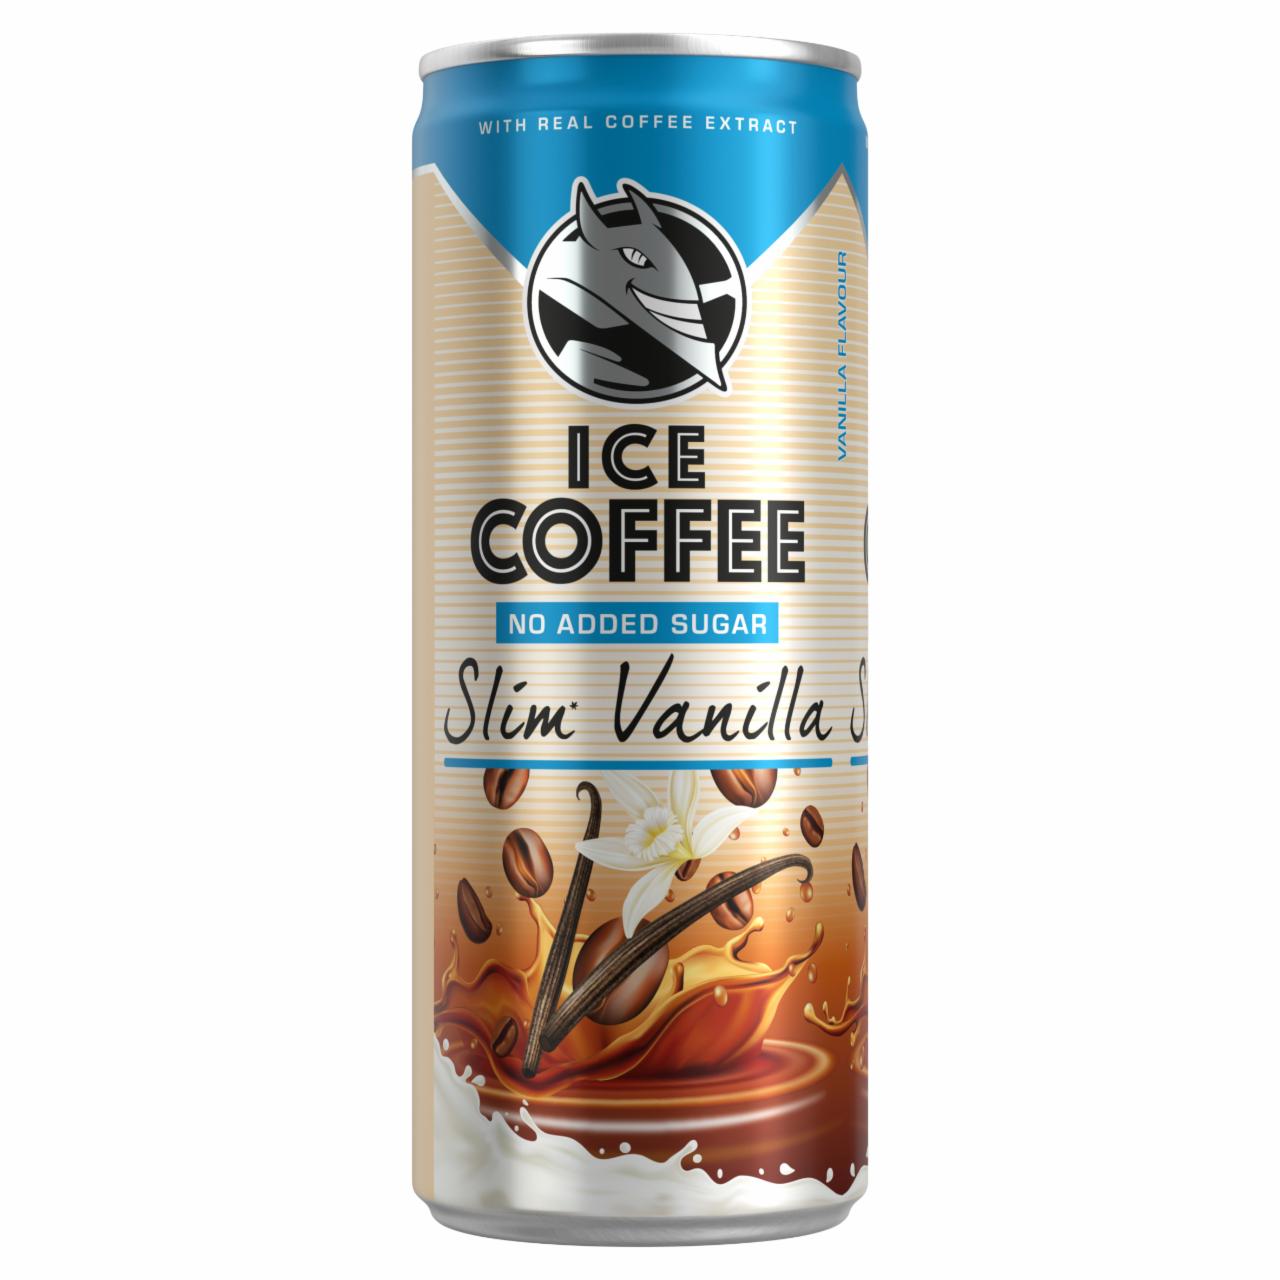 Képek - Ice Coffee Slim Vanilla UHT Bourbon vanília ízű ital tejjel, kávékivonattal és édesítőszerekkel 250